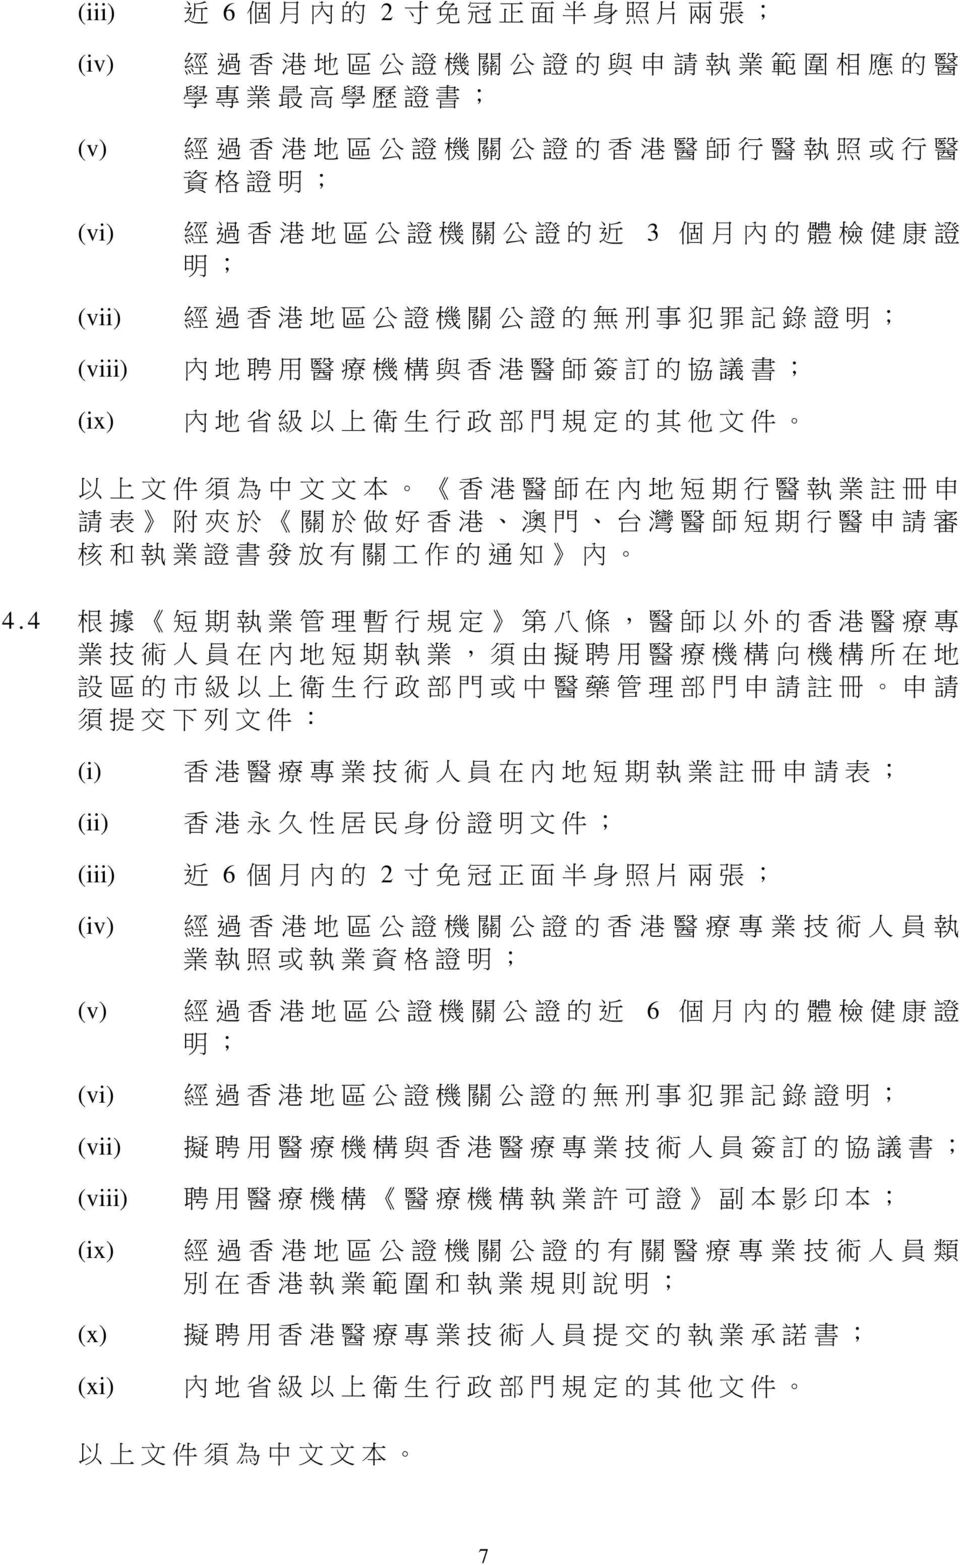 港 醫 師 在 內 地 短 期 行 醫 執 業 註 冊 申 請 表 附 夾 於 關 於 做 好 香 港 澳 門 台 灣 醫 師 短 期 行 醫 申 請 審 核 和 執 業 證 書 發 放 有 關 工 作 的 通 知 內 4.